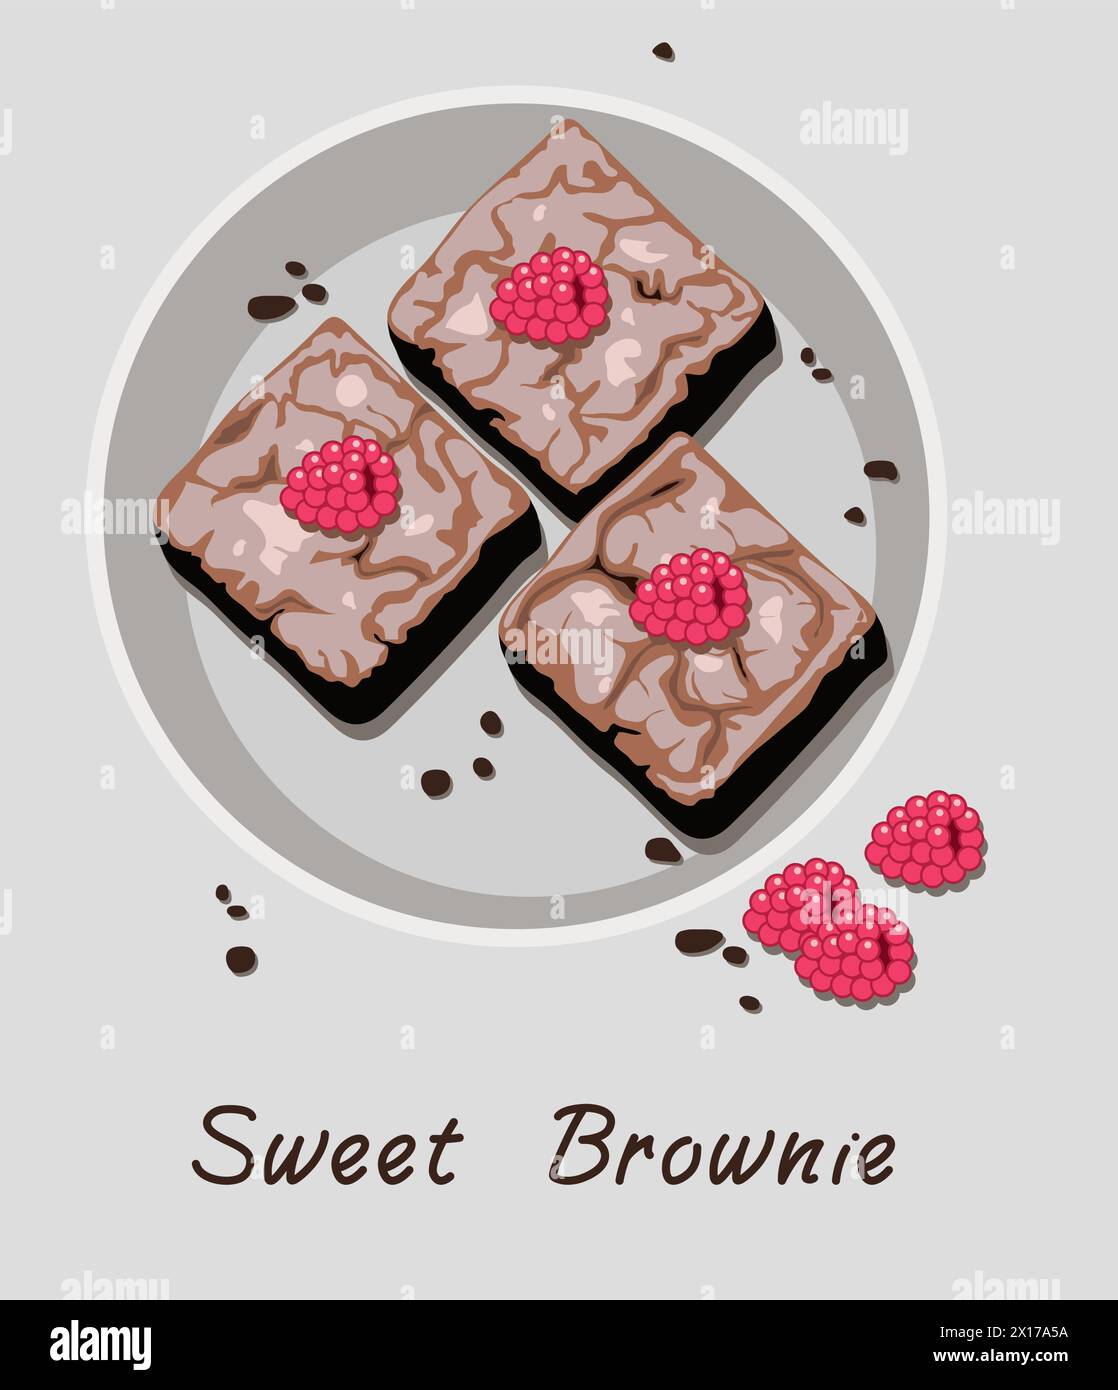 brownies au chocolat vecteur dans une assiette isolée sur fond gris. morceaux de gâteau au brownie avec des fruits de framboise sur le dessus. brownies sucrés sur assiette comme homemad Illustration de Vecteur